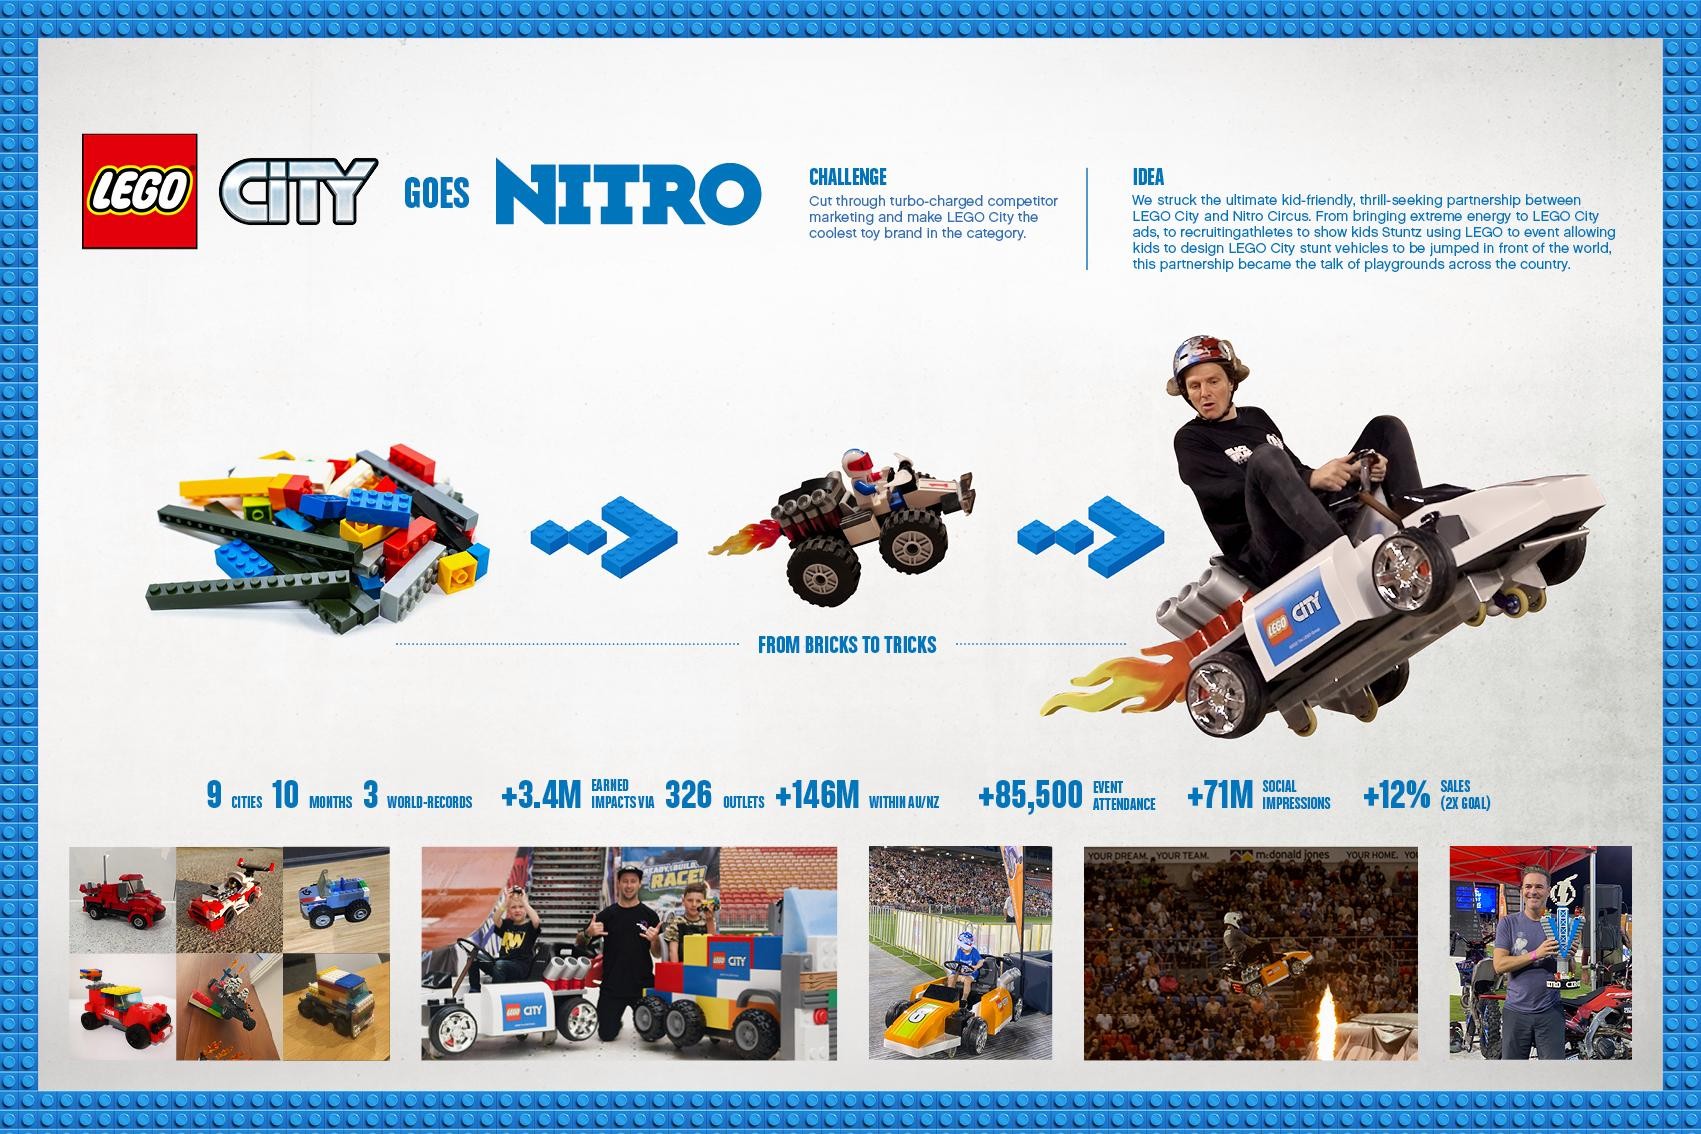 LEGO City Goes Nitro